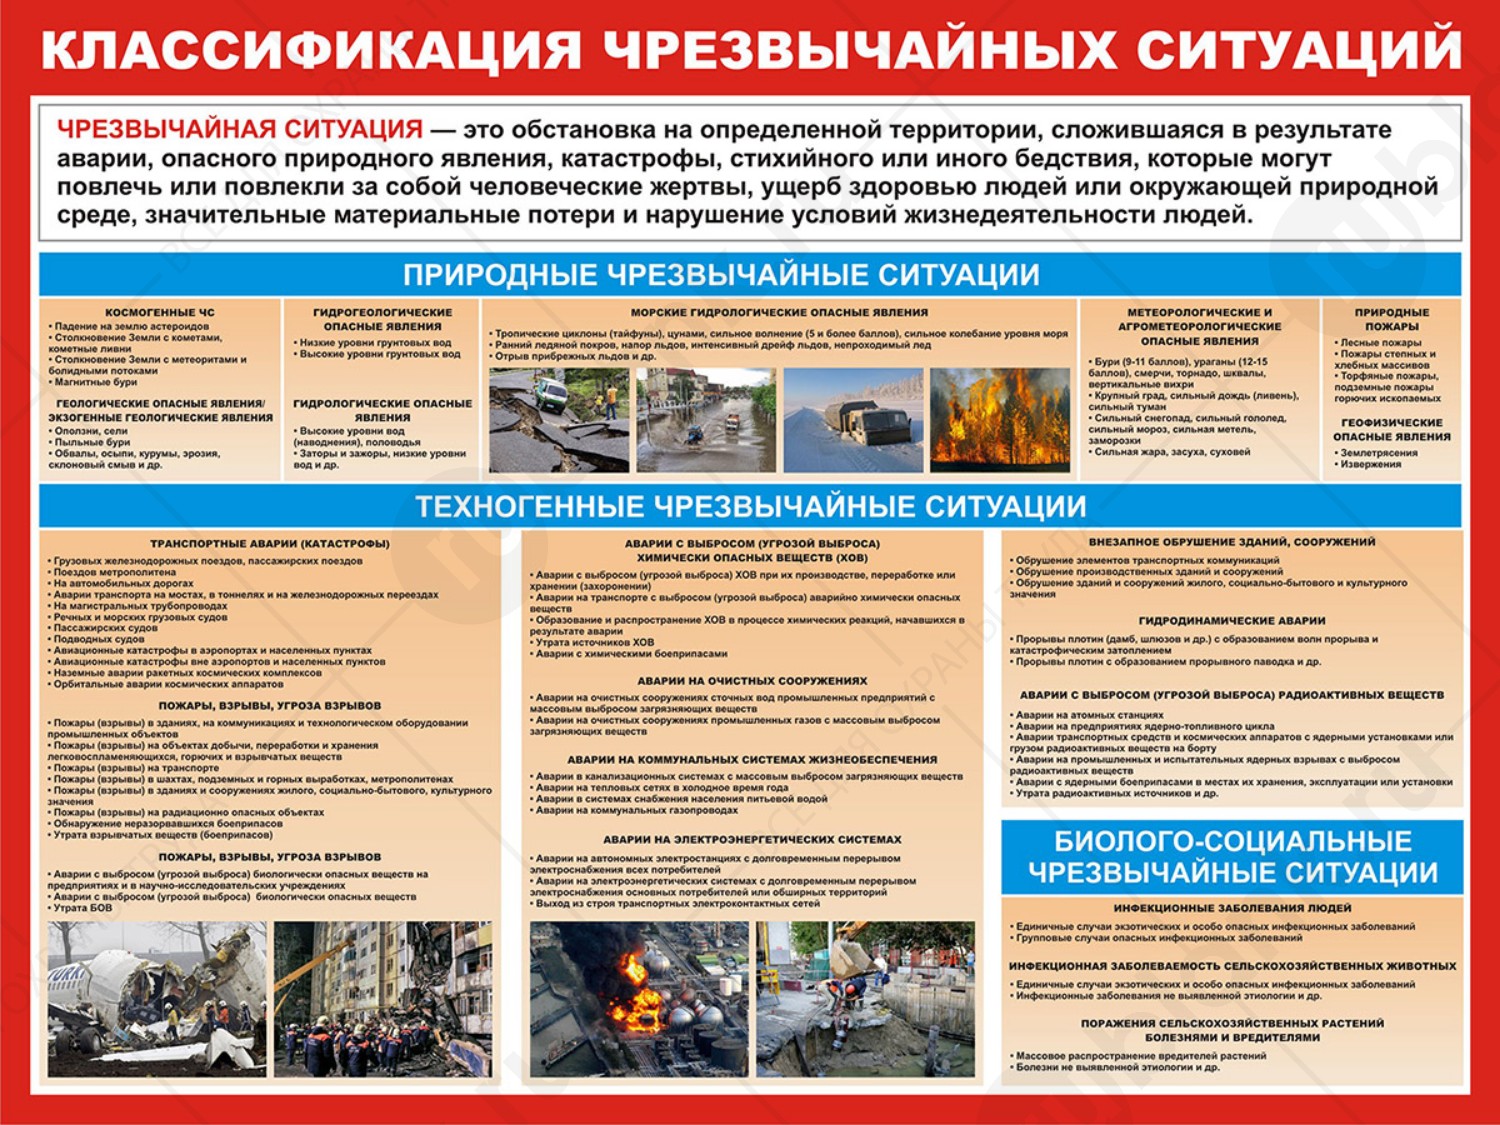 Плакат "Классификация чрезвычайных ситуаций" 98х84 см